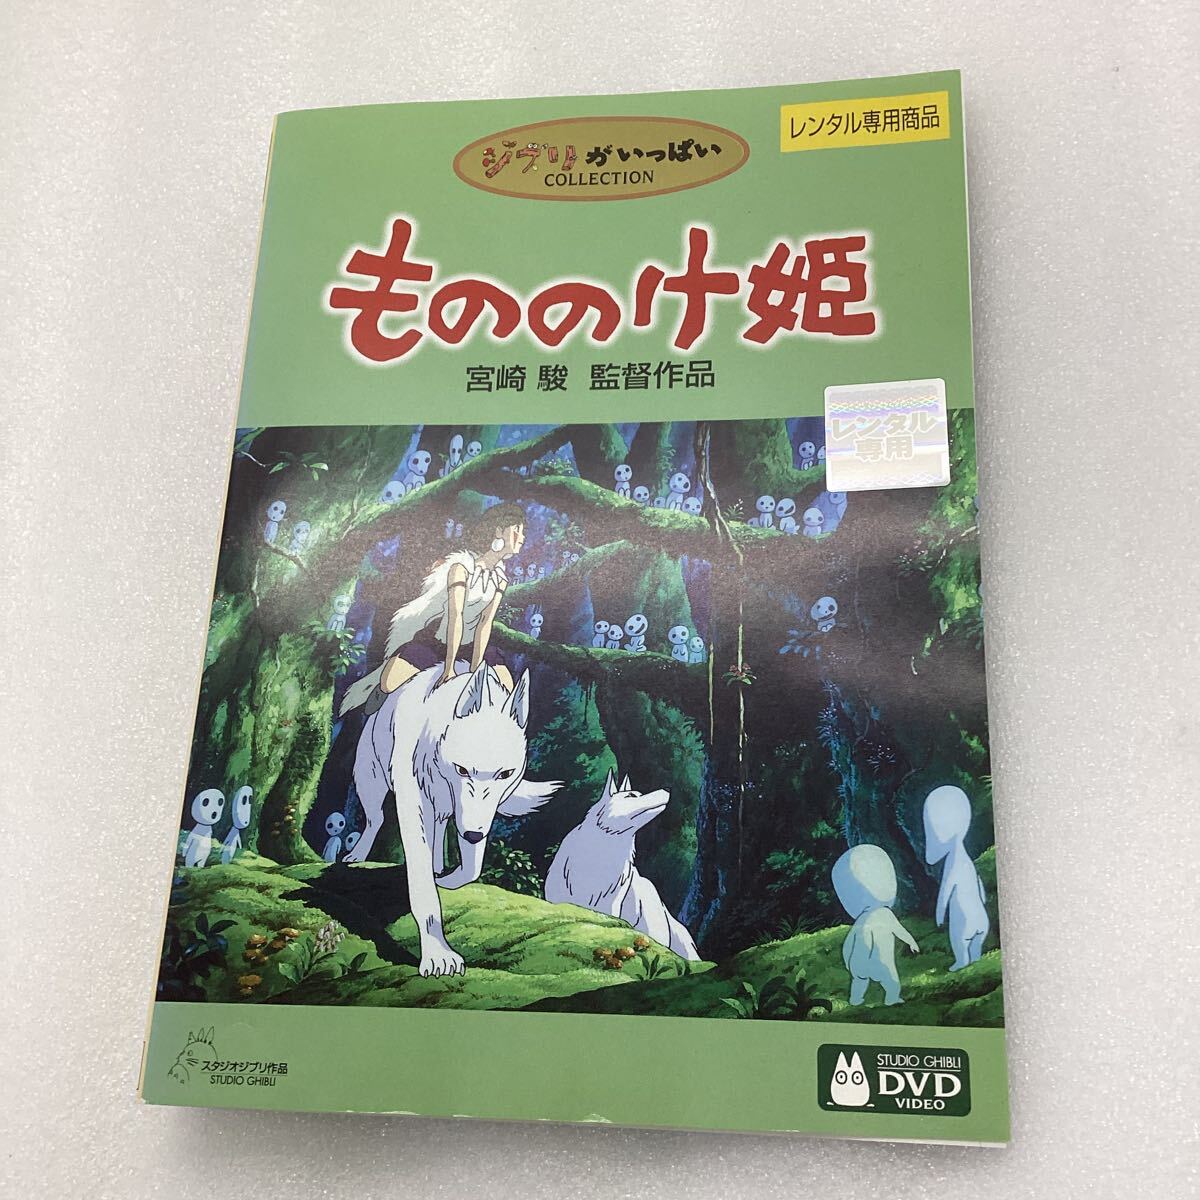 [C1]DVD * Princess Mononoke * rental * case less (68602)